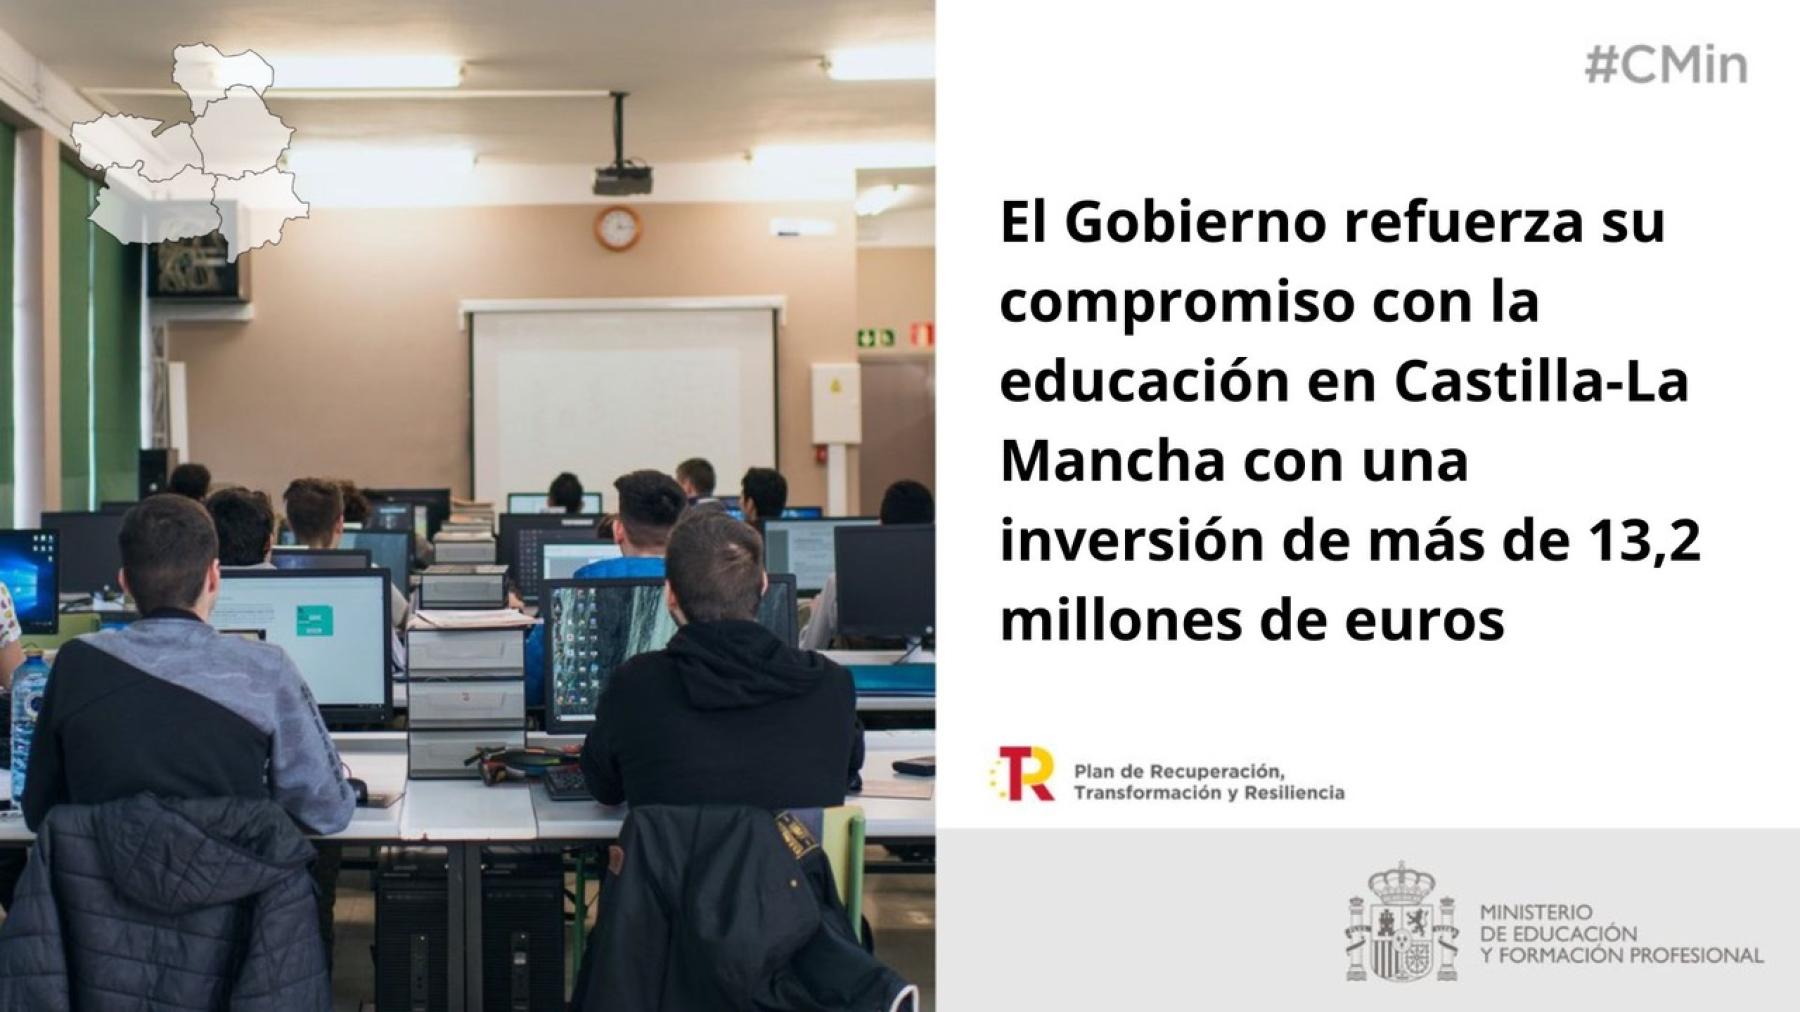 El Gobierno refuerza su compromiso con la educación en Castilla-La Mancha con una inversión de más de 13,2 millones de euros